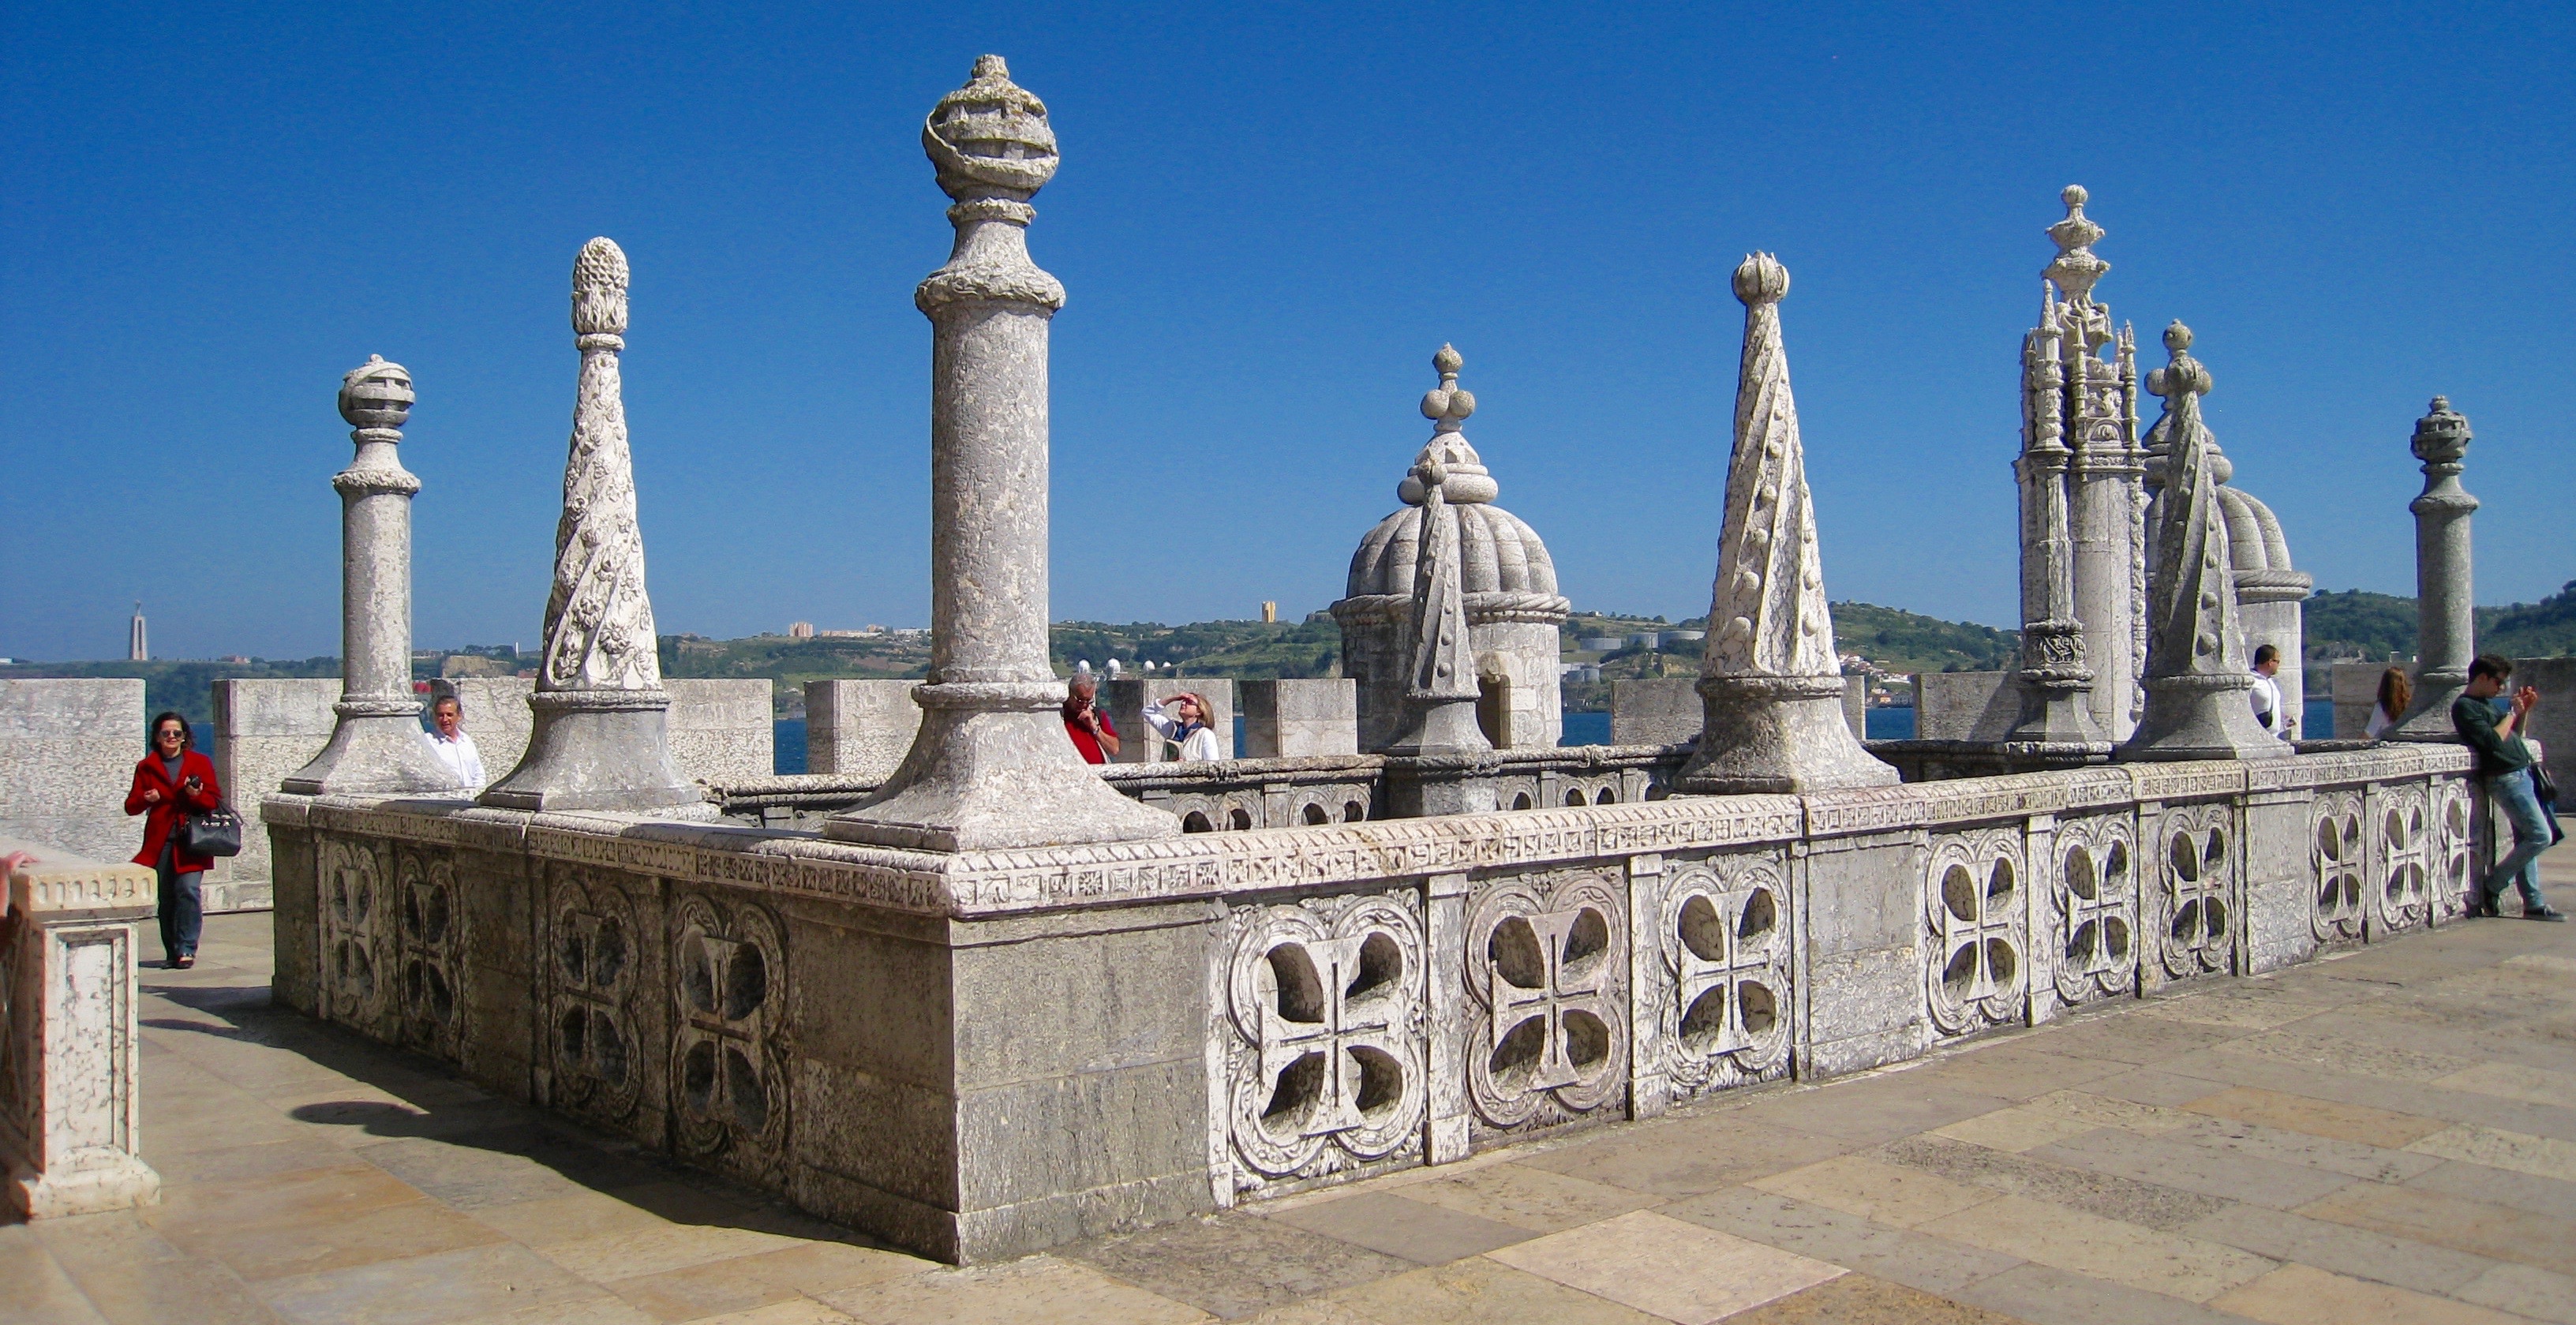 Belém Tower, Lisbon